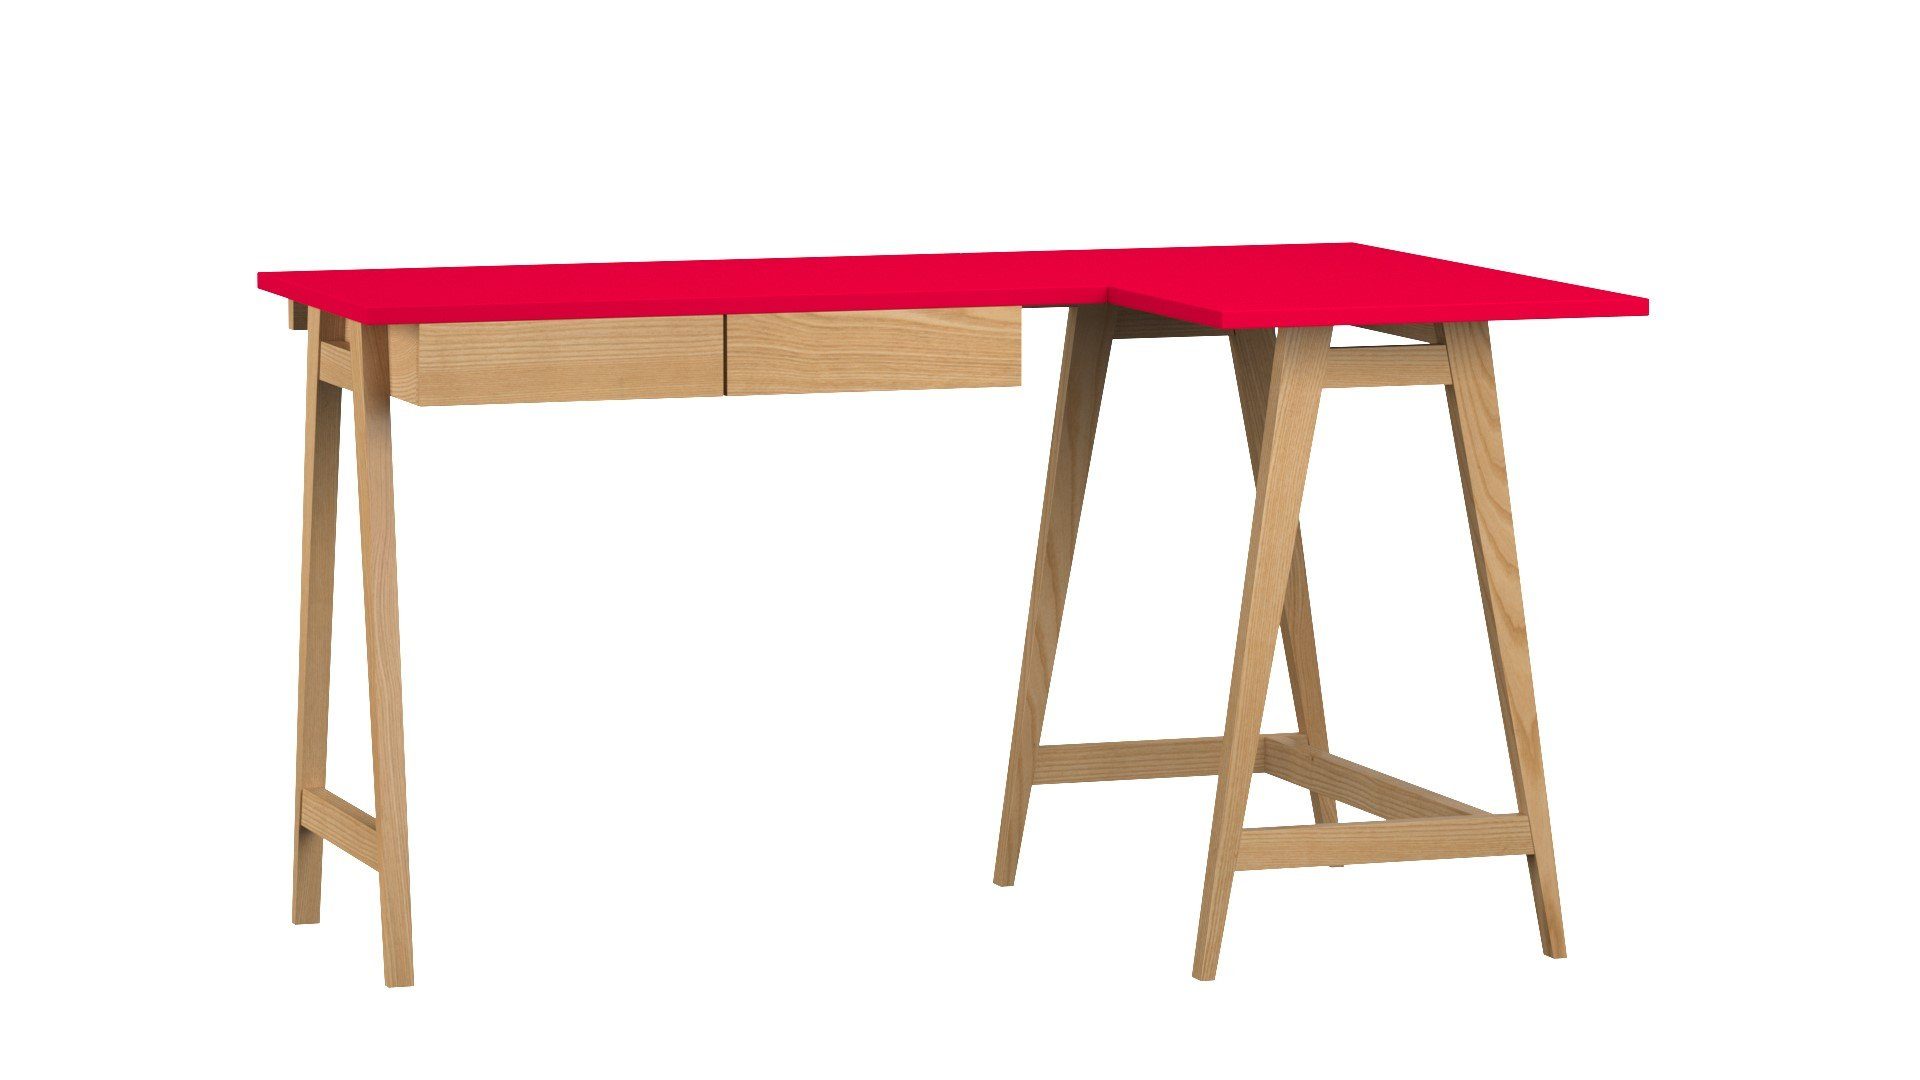 Katia Moderner Design Katia - (Eckschreibtisch Siblo Kinderzimmer mit Rot - Eckschreibtisch Eschenholz - Schreibtisch Schreibtisch - Jugendzimmer Schubladen minimalistisches - - MDF-Platte Schubladen) mit